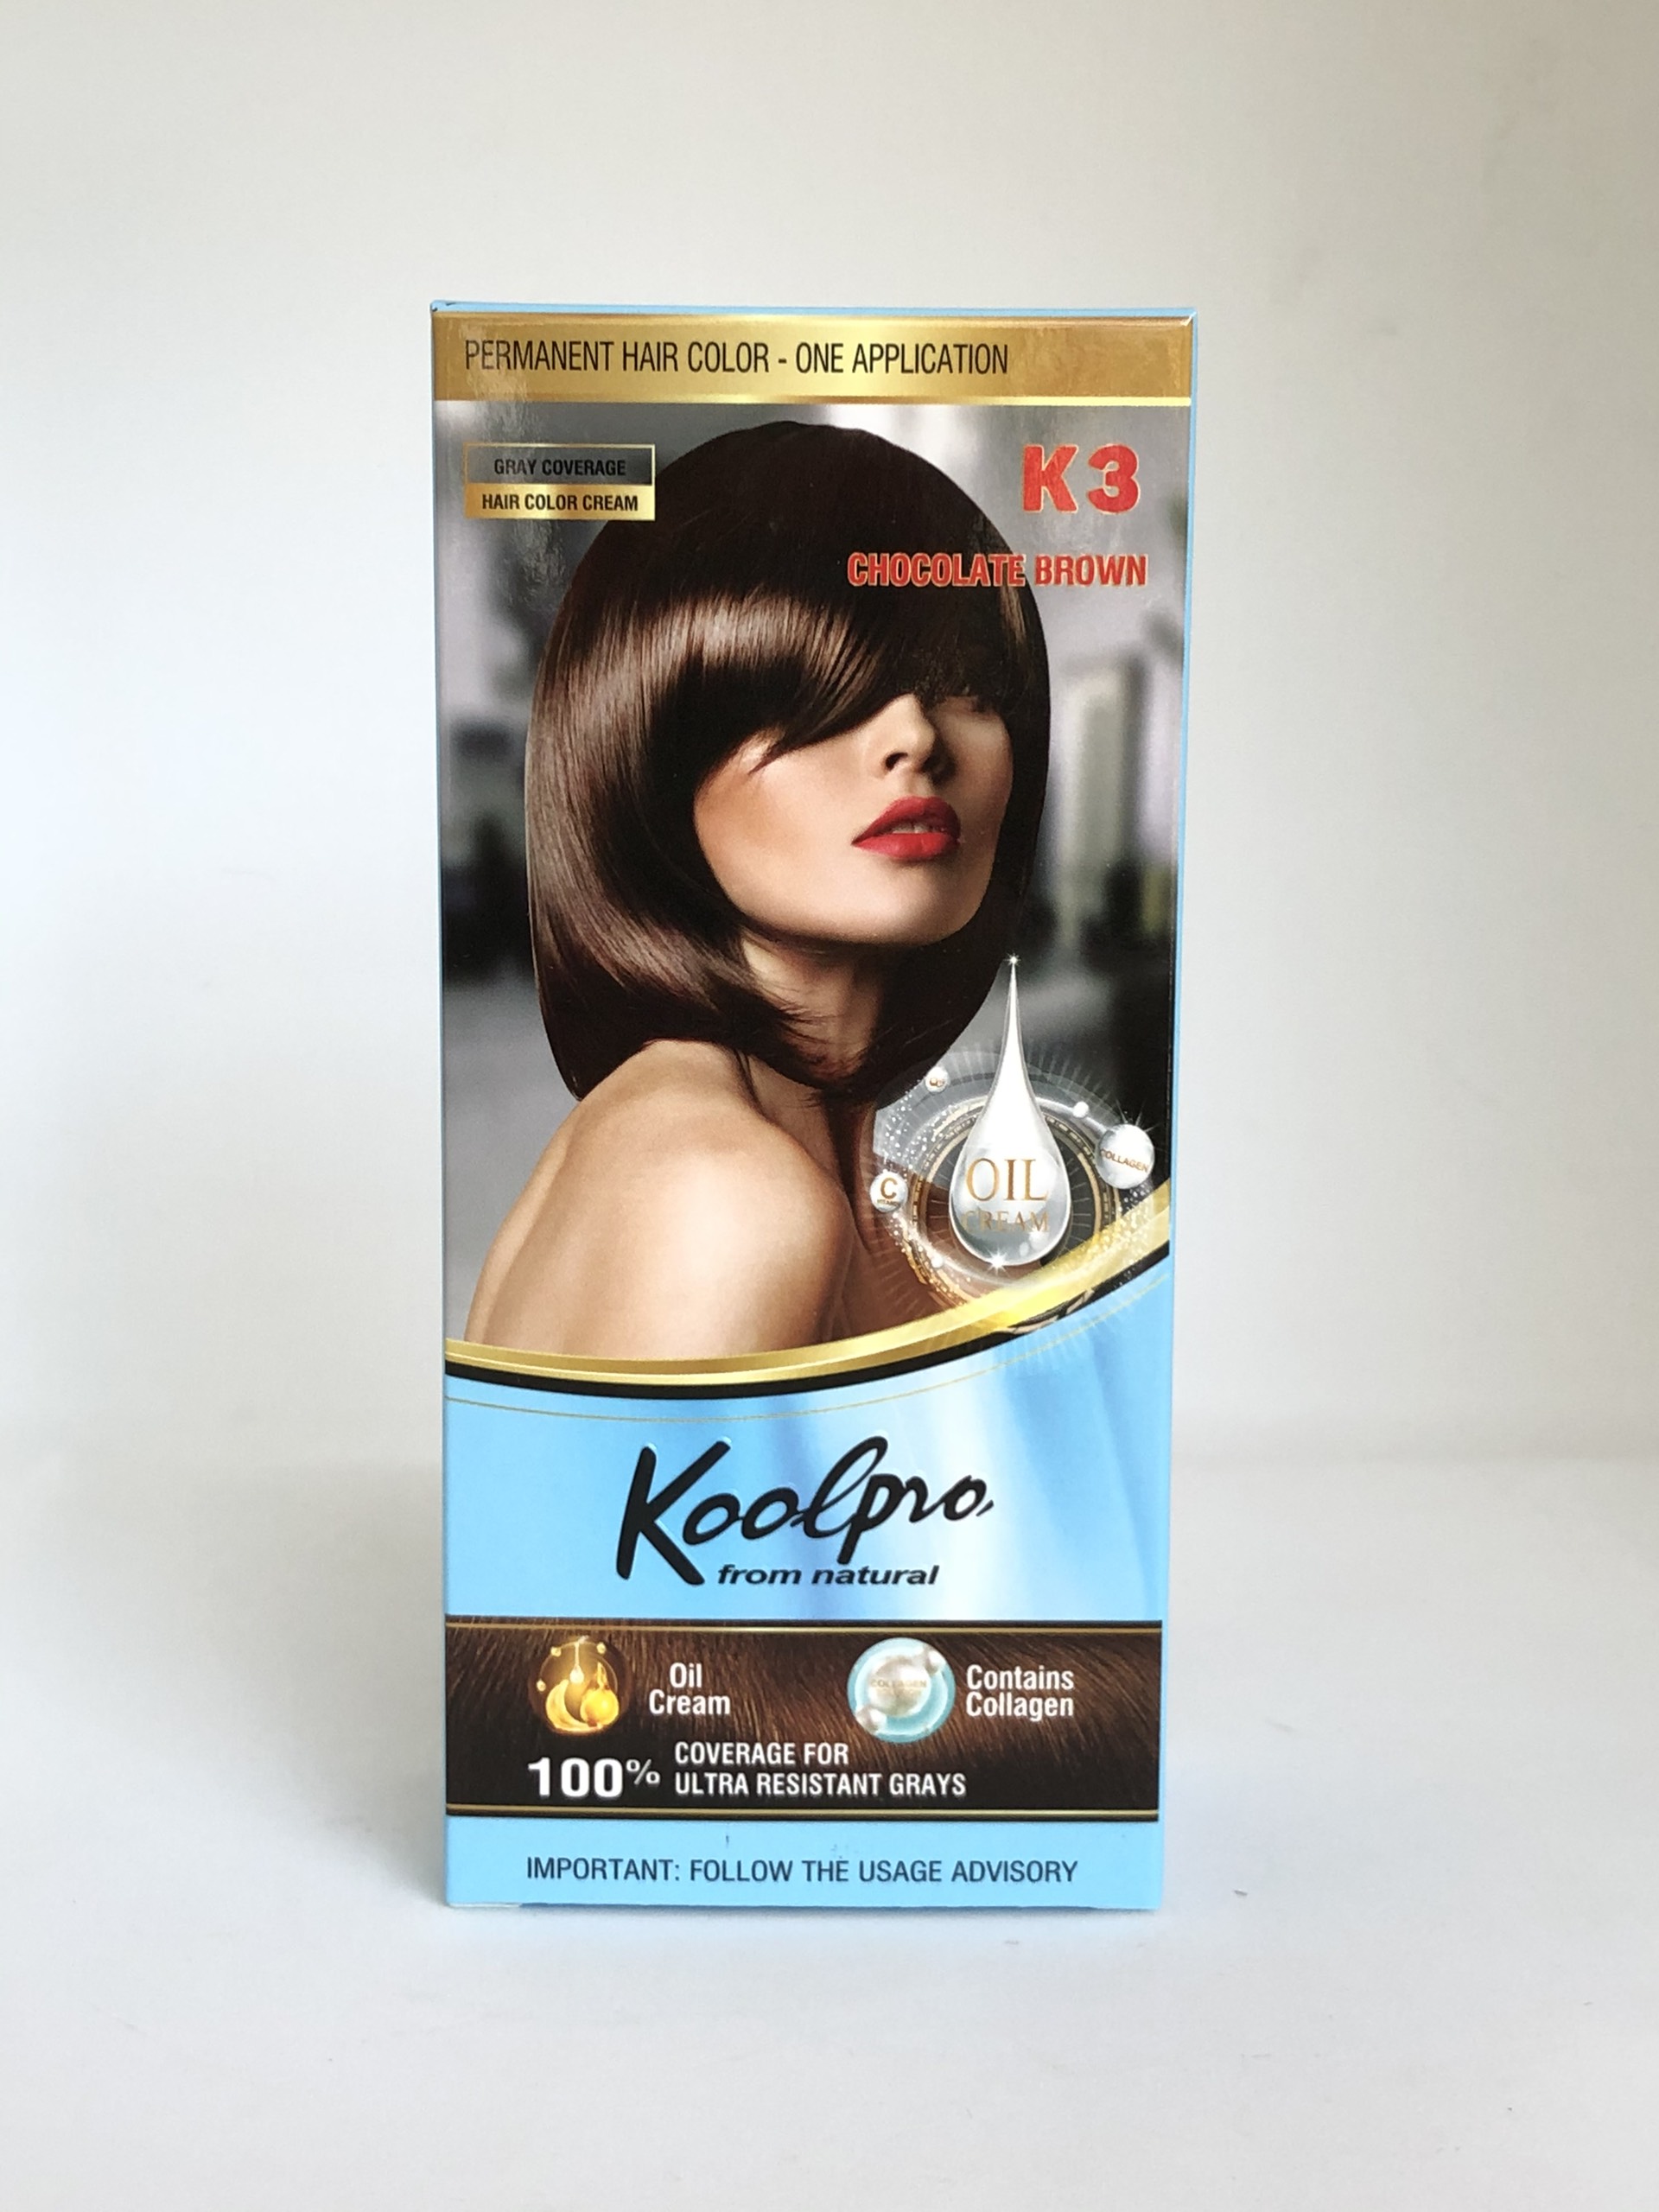 Thuốc nhuộm tóc KoolPro màu nâu socola sẽ khiến cho mái tóc của bạn trở nên mềm mượt và rực rỡ hơn bao giờ hết. Màu nâu socola tôn lên vẻ đẹp sang trọng và hiện đại. Hãy cùng xem hình ảnh để tự mình khám phá những điều tuyệt vời mà loại thuốc nhuộm tóc này mang lại cho bạn.